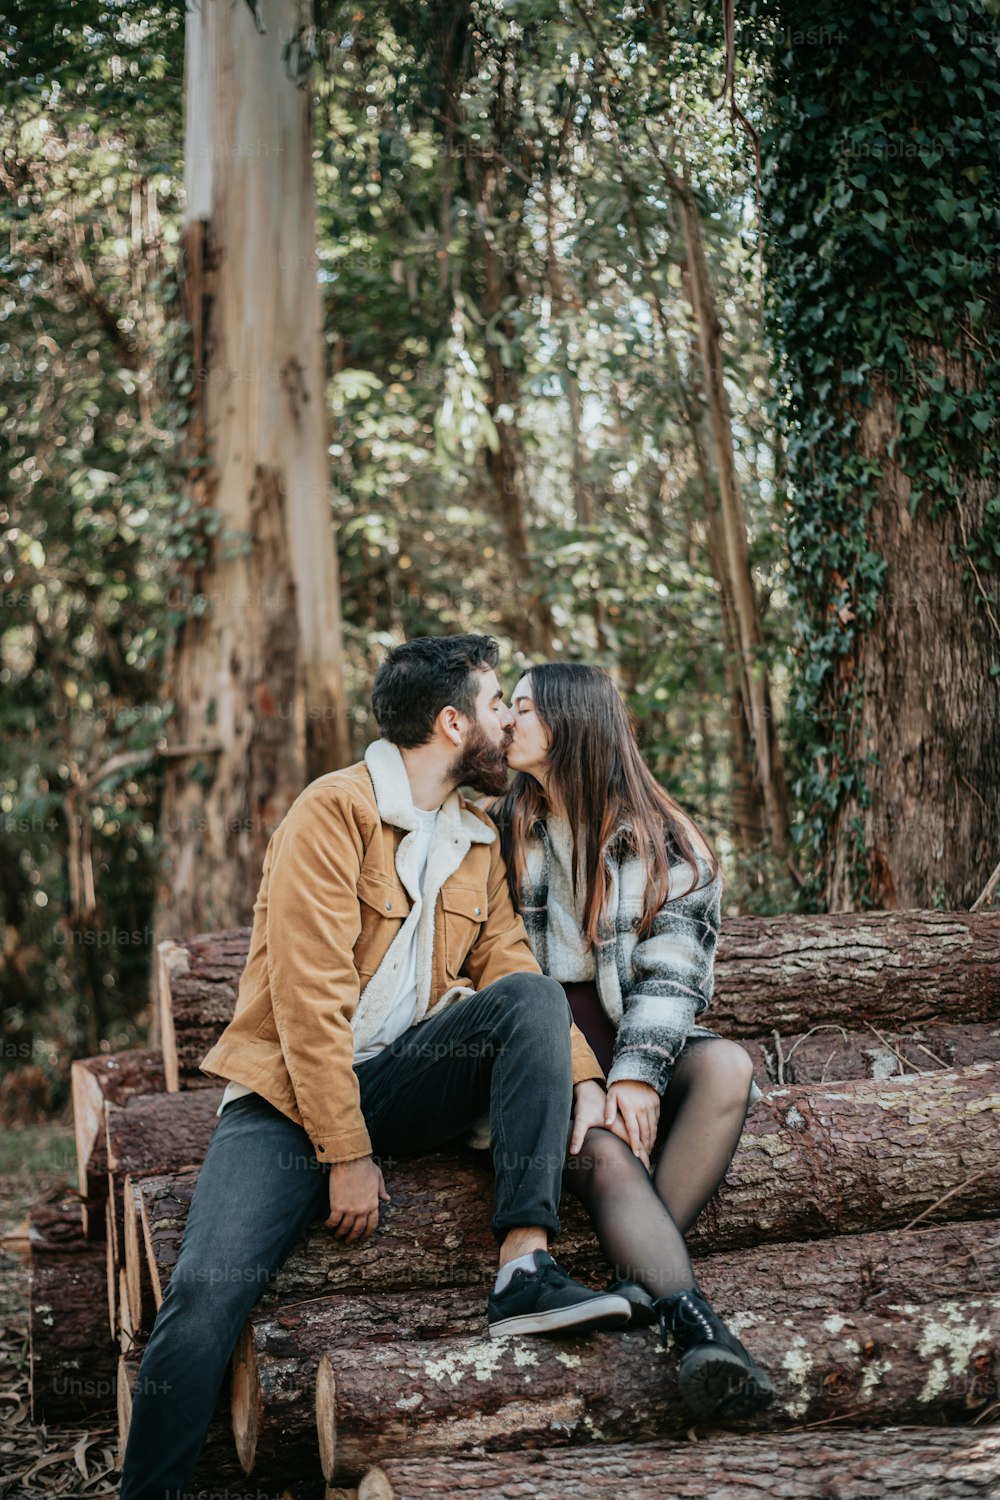 Ein Mann und eine Frau sitzen auf einem Baumstamm im Wald